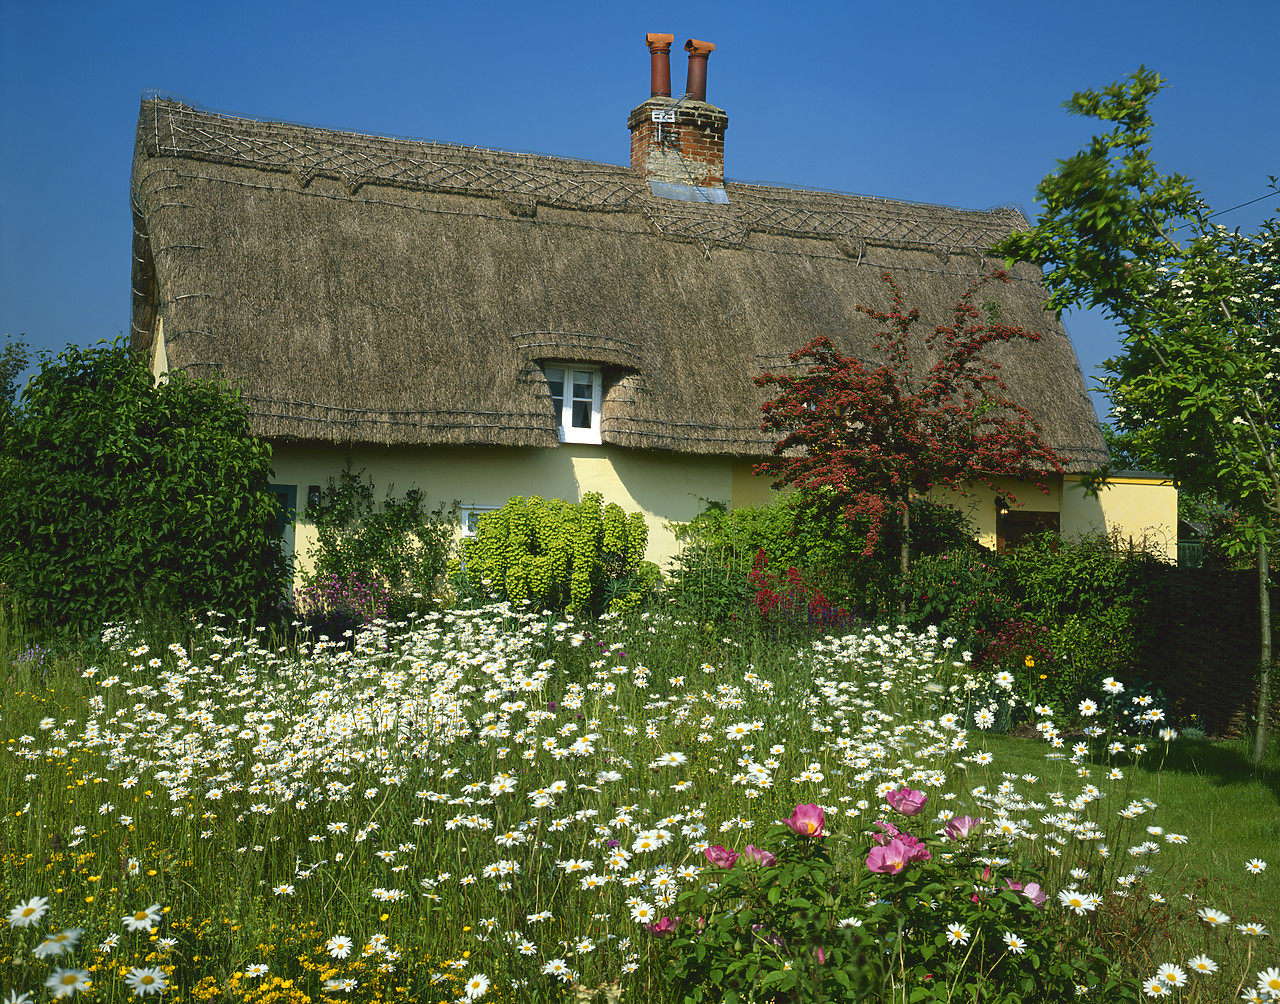 #040131-3 - Thatched Cottage & Garden, Suffolk, England